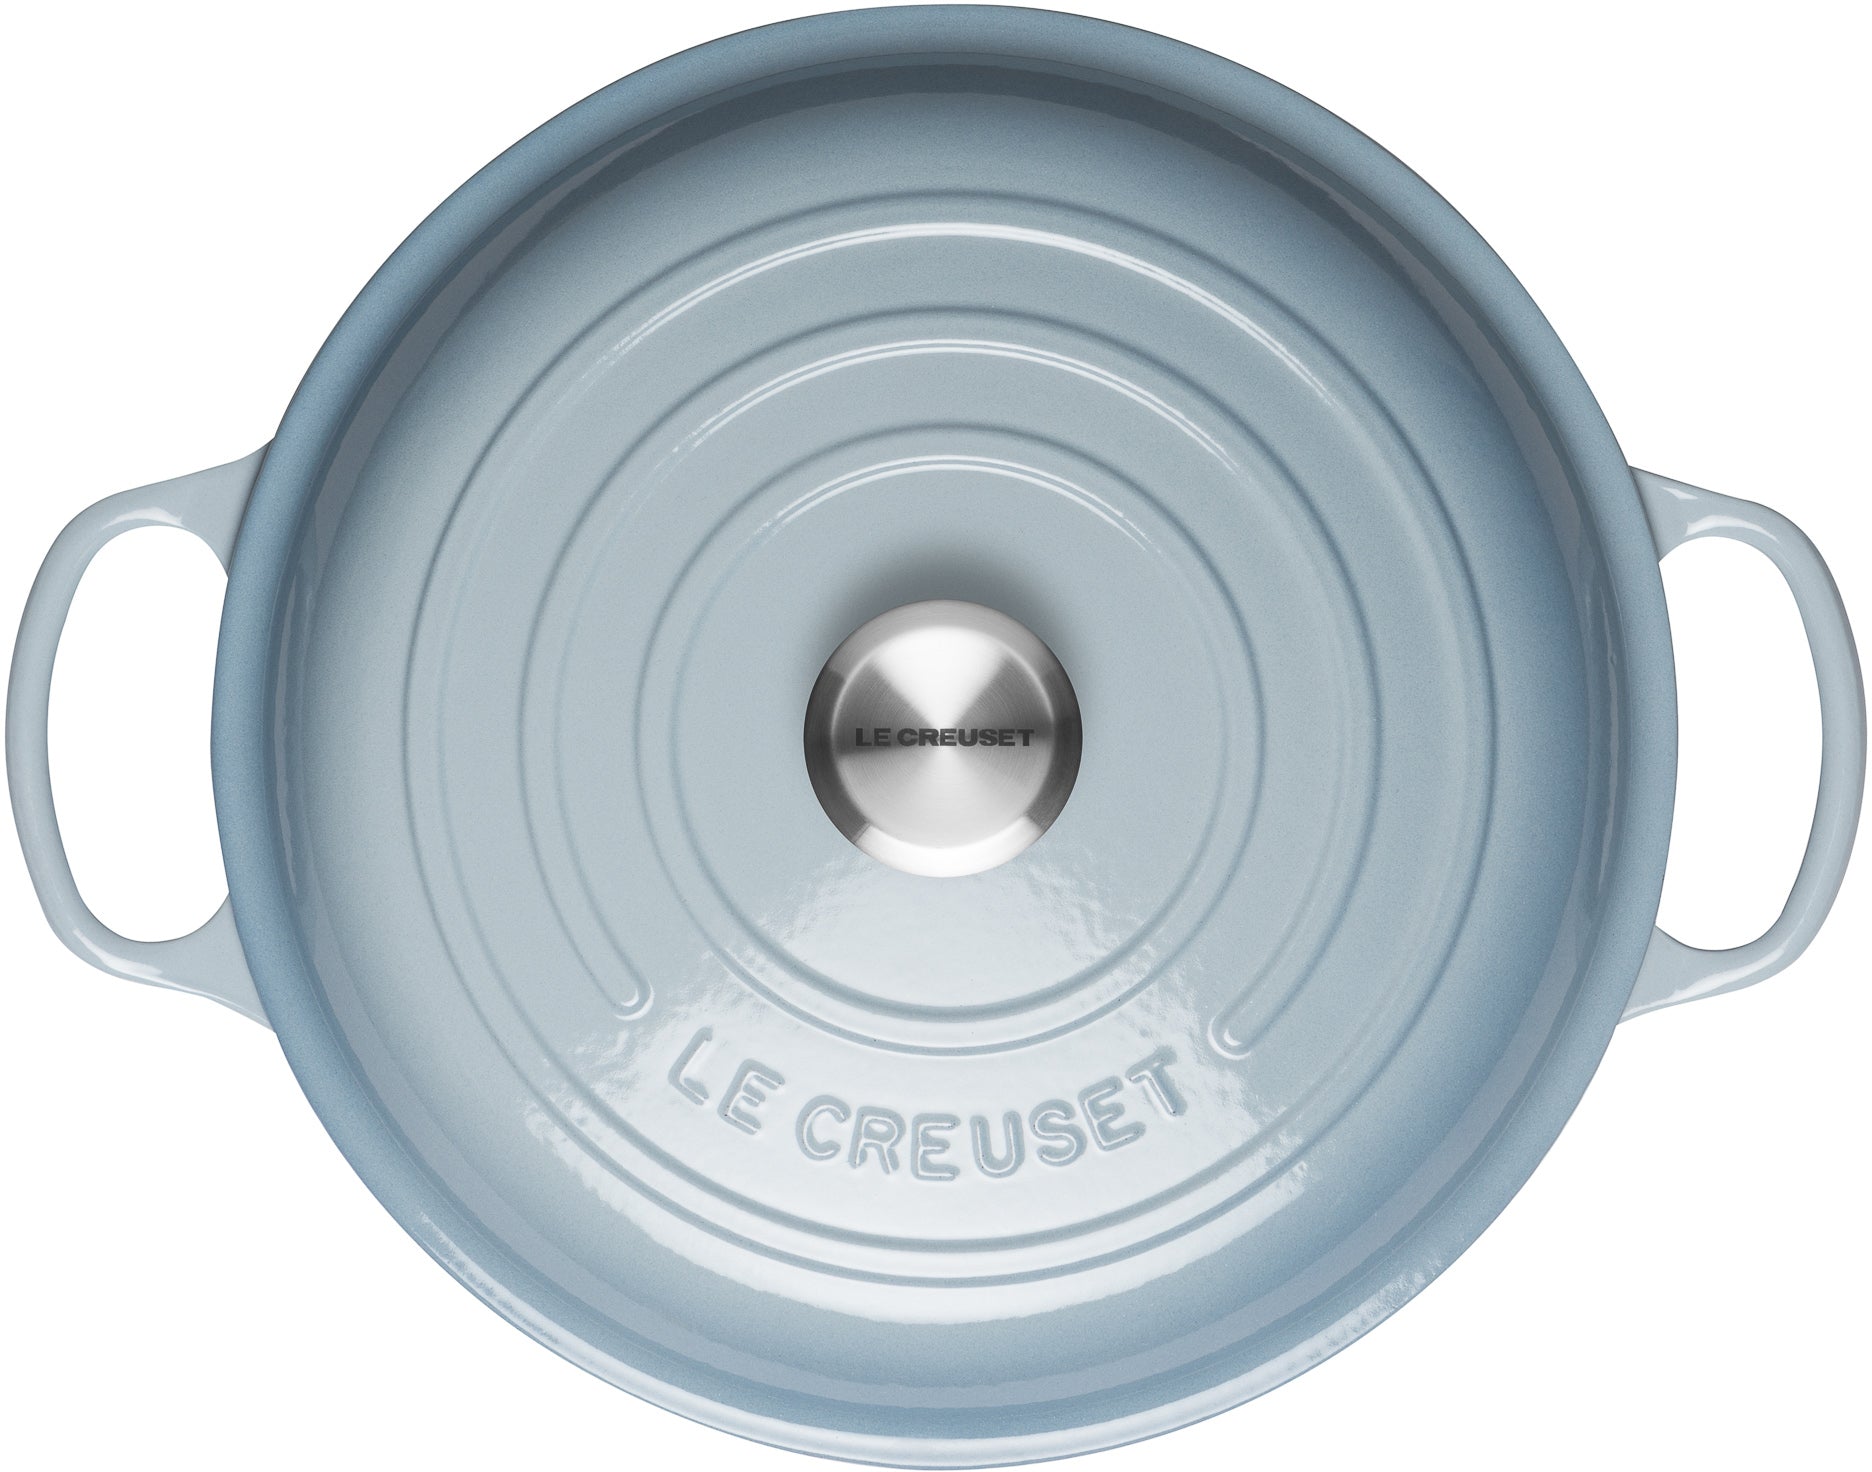 Le Creuset 211803042 Signature Cast Iron 30cm Shallow Casserole Coastal Blue - Premium Stockpots / Casseroles from Le Creuset - Just $246.95! Shop now at W Hurst & Son (IW) Ltd